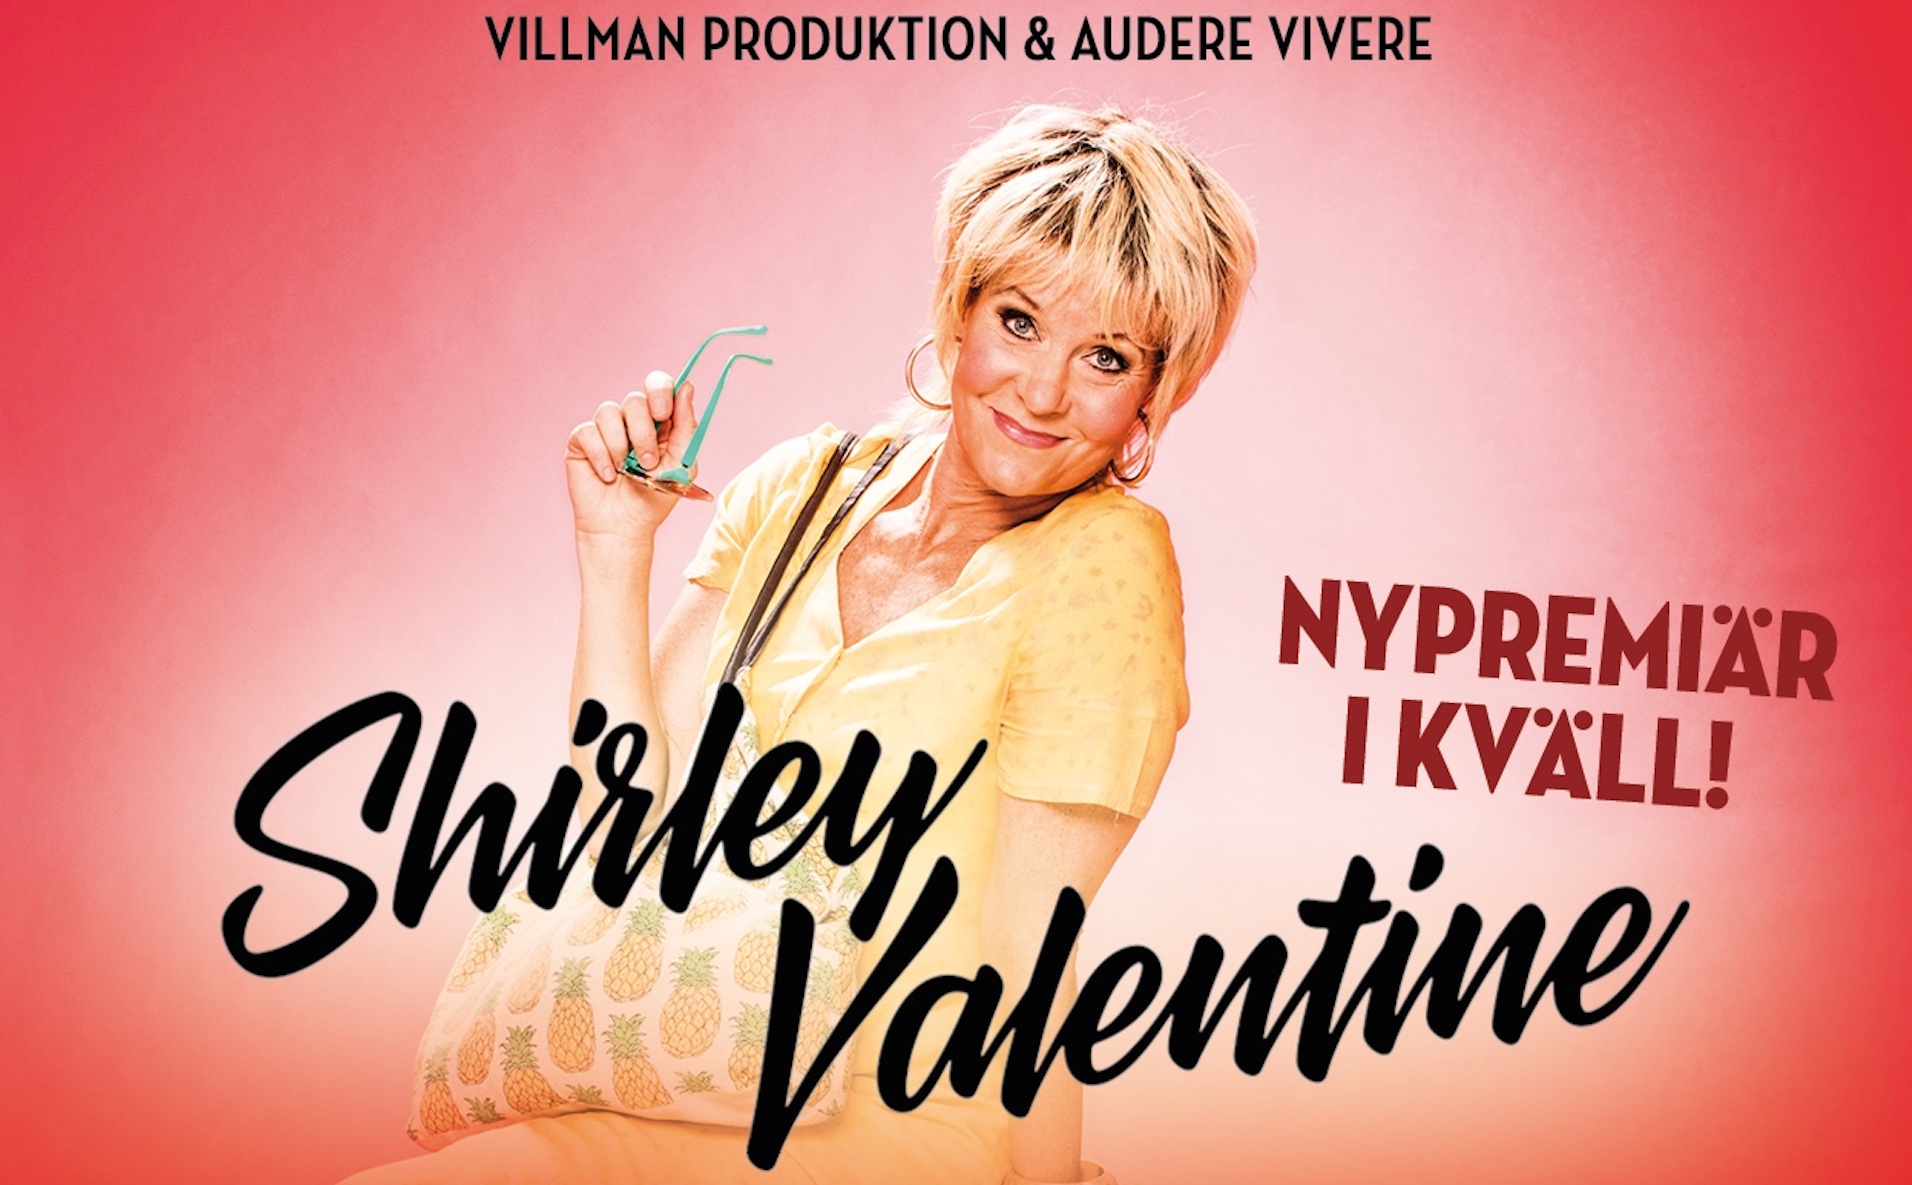 Maria Lundqvist succéföreställning ”Shirley Valentine” får nypremiär på Lorensbergsteatern i Göteborg!